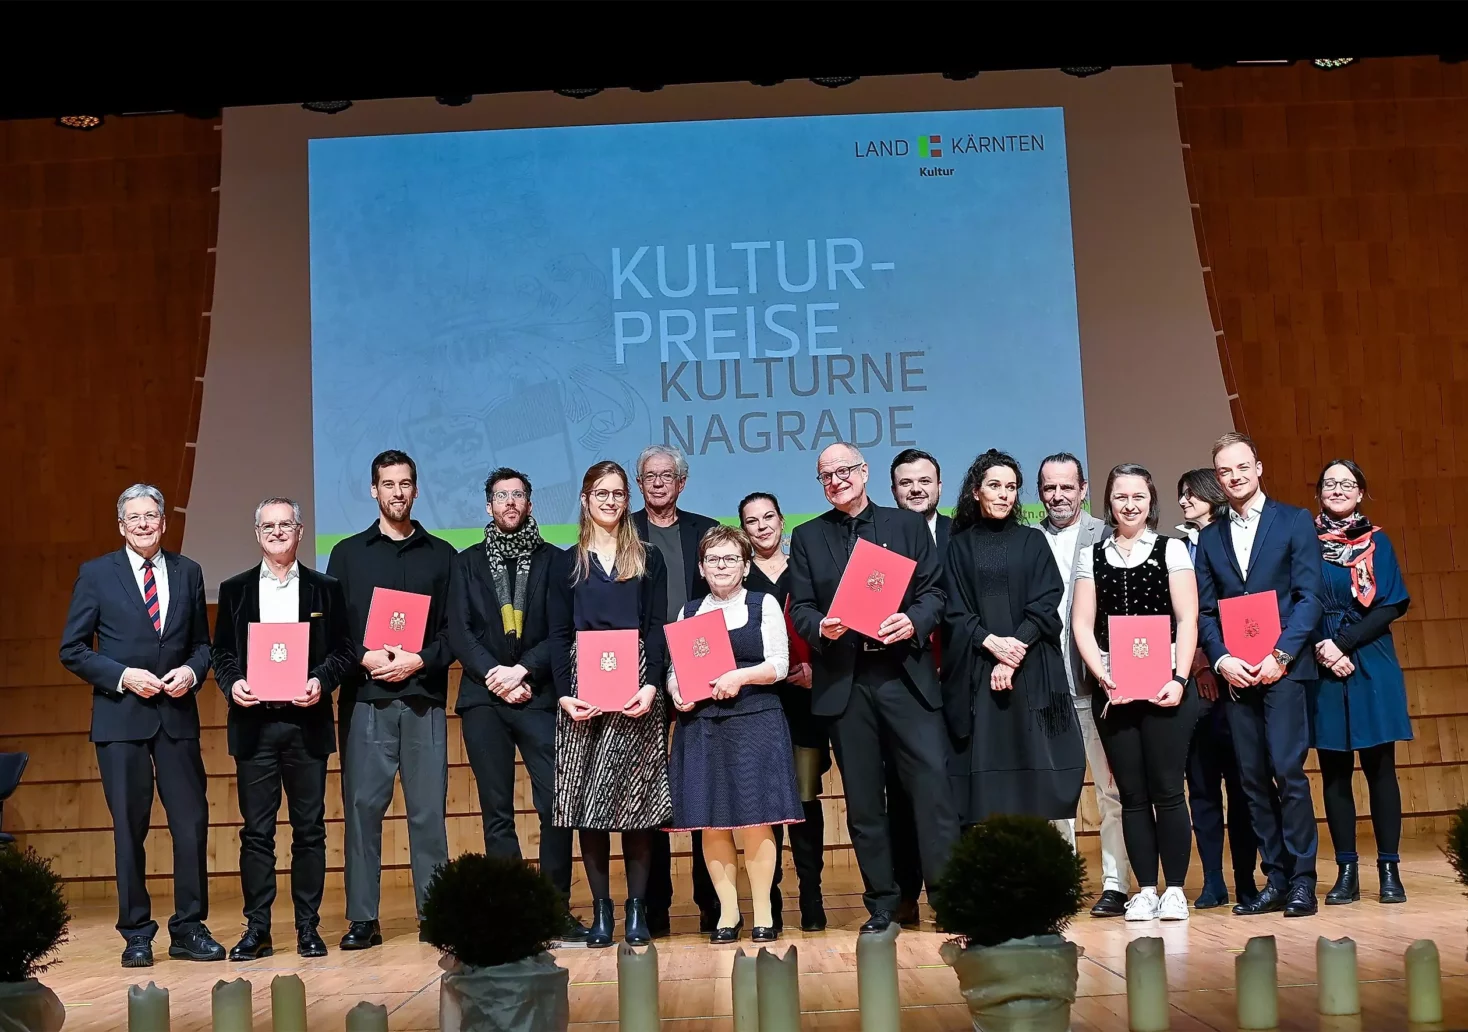 Kulturpreise des Landes Kärnten wurden verliehen